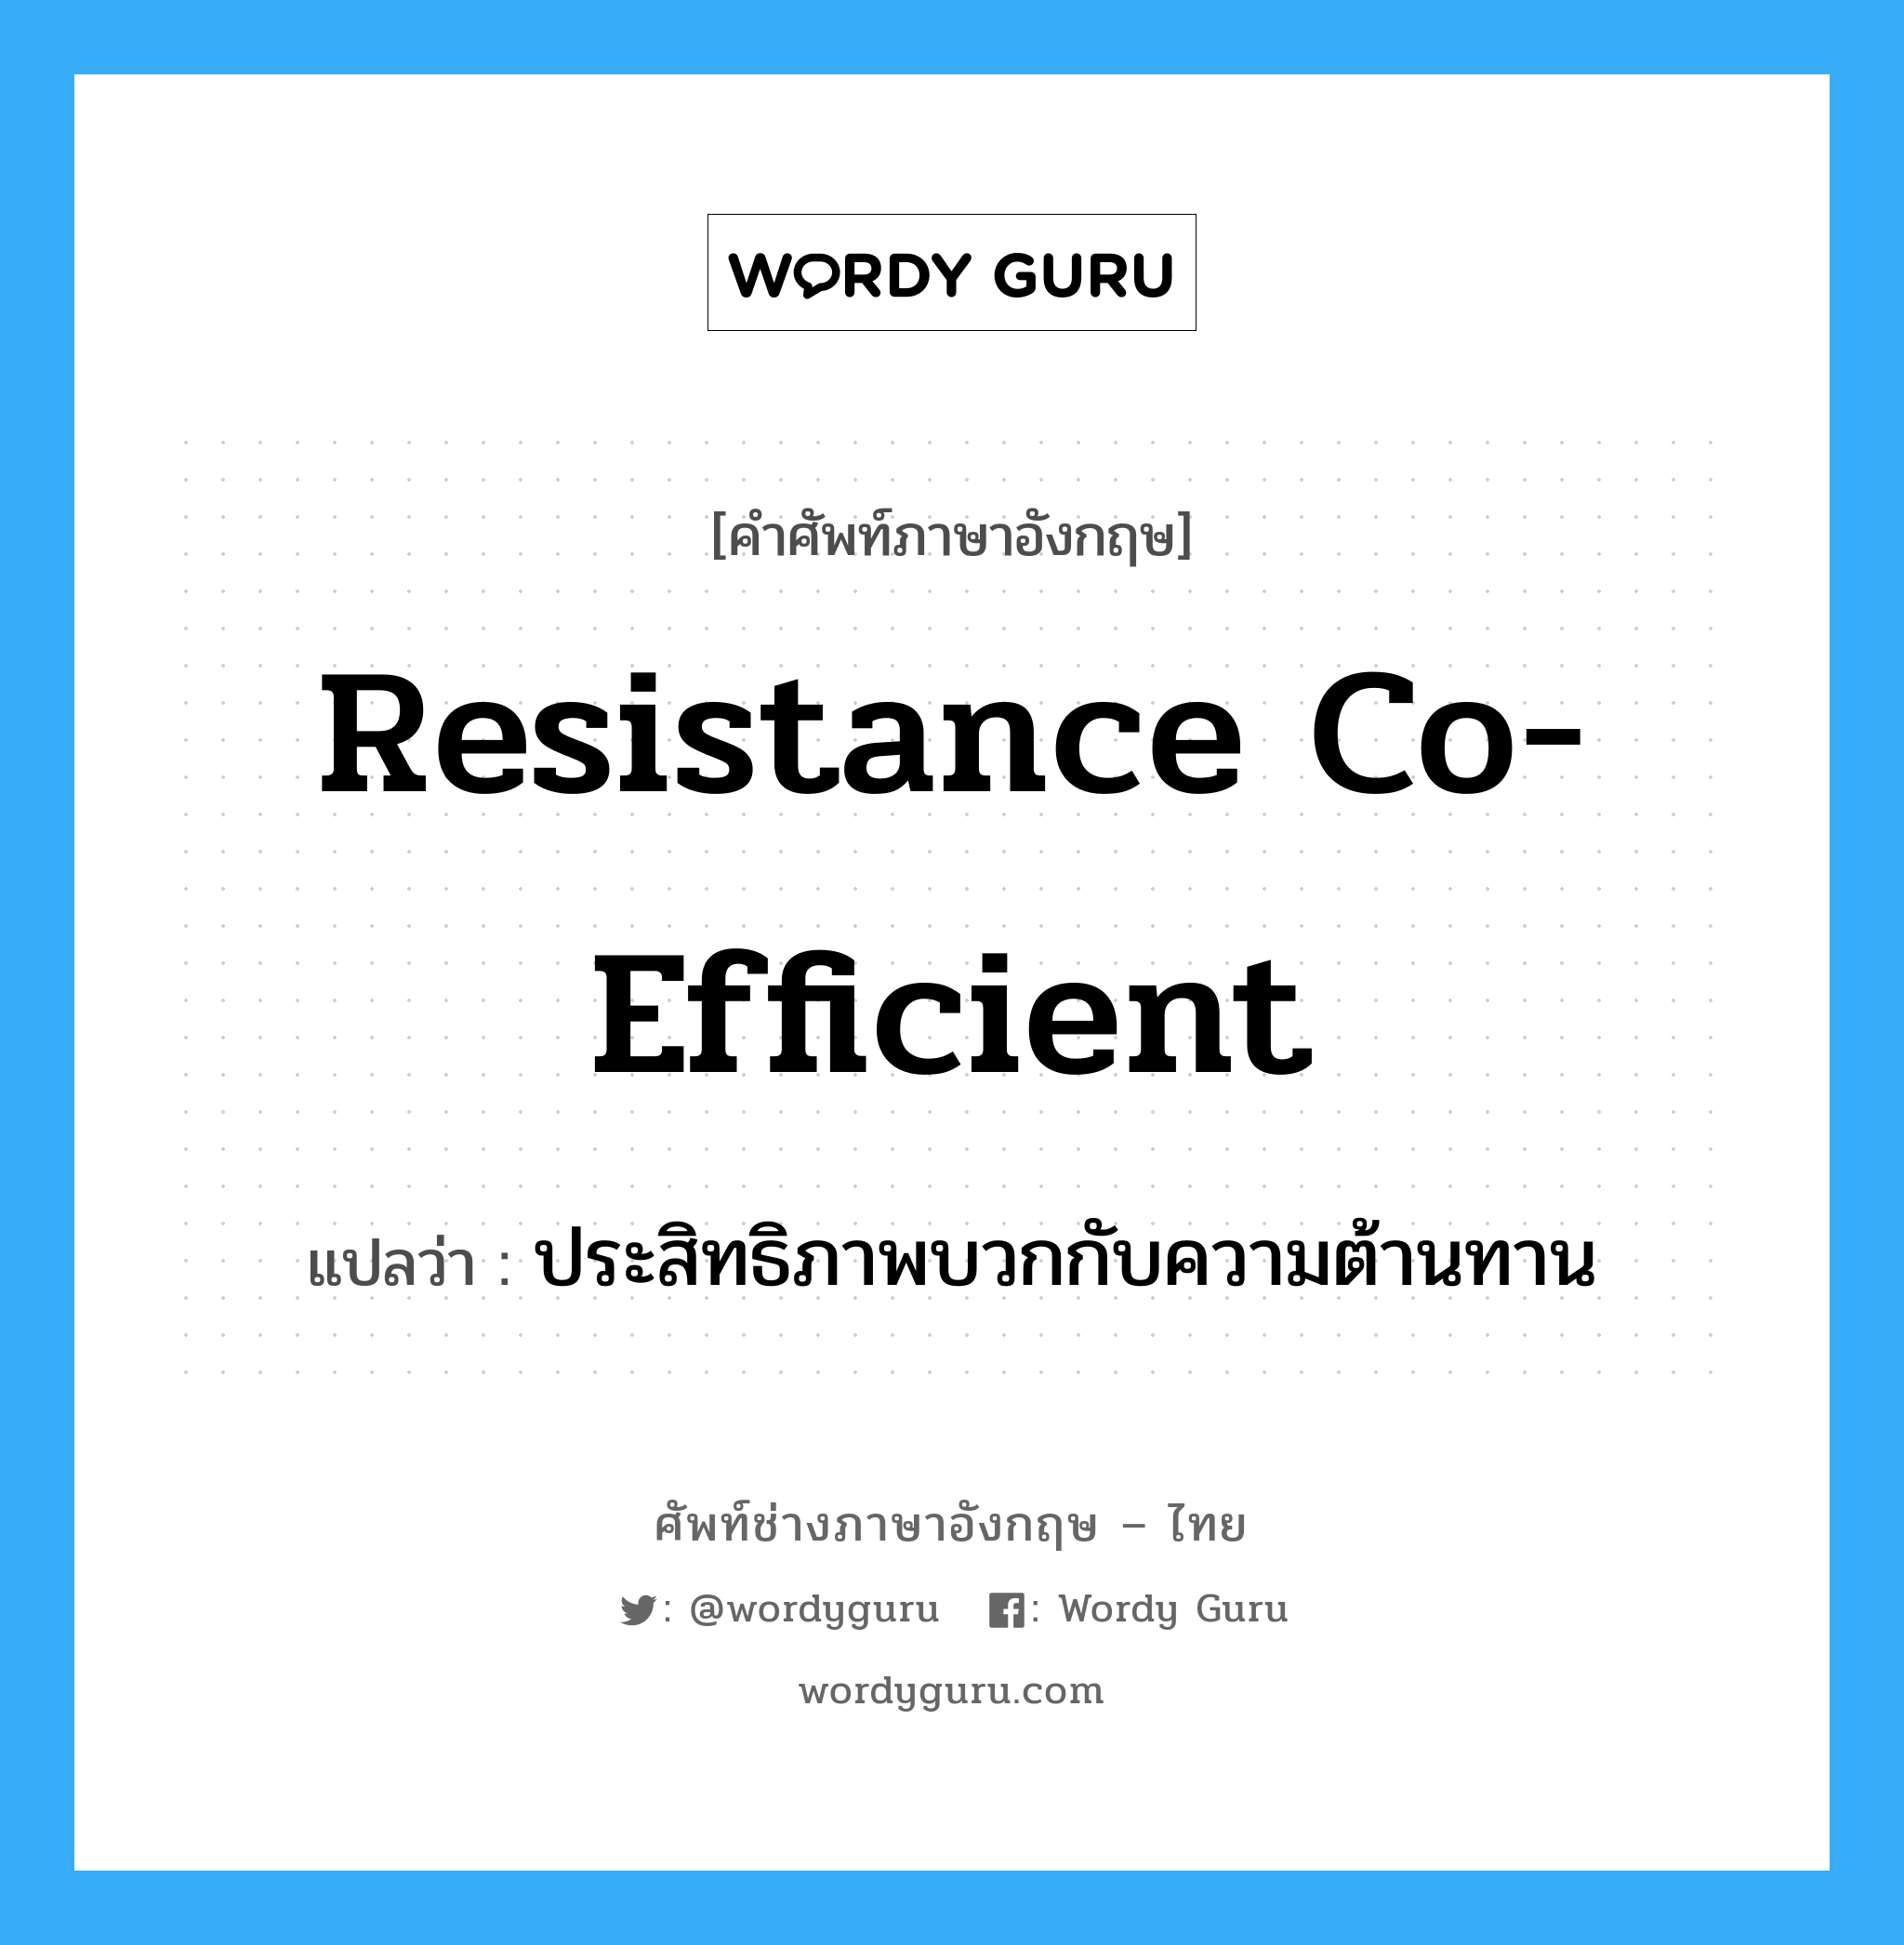 resistance co-efficient แปลว่า?, คำศัพท์ช่างภาษาอังกฤษ - ไทย resistance co-efficient คำศัพท์ภาษาอังกฤษ resistance co-efficient แปลว่า ประสิทธิภาพบวกกับความต้านทาน